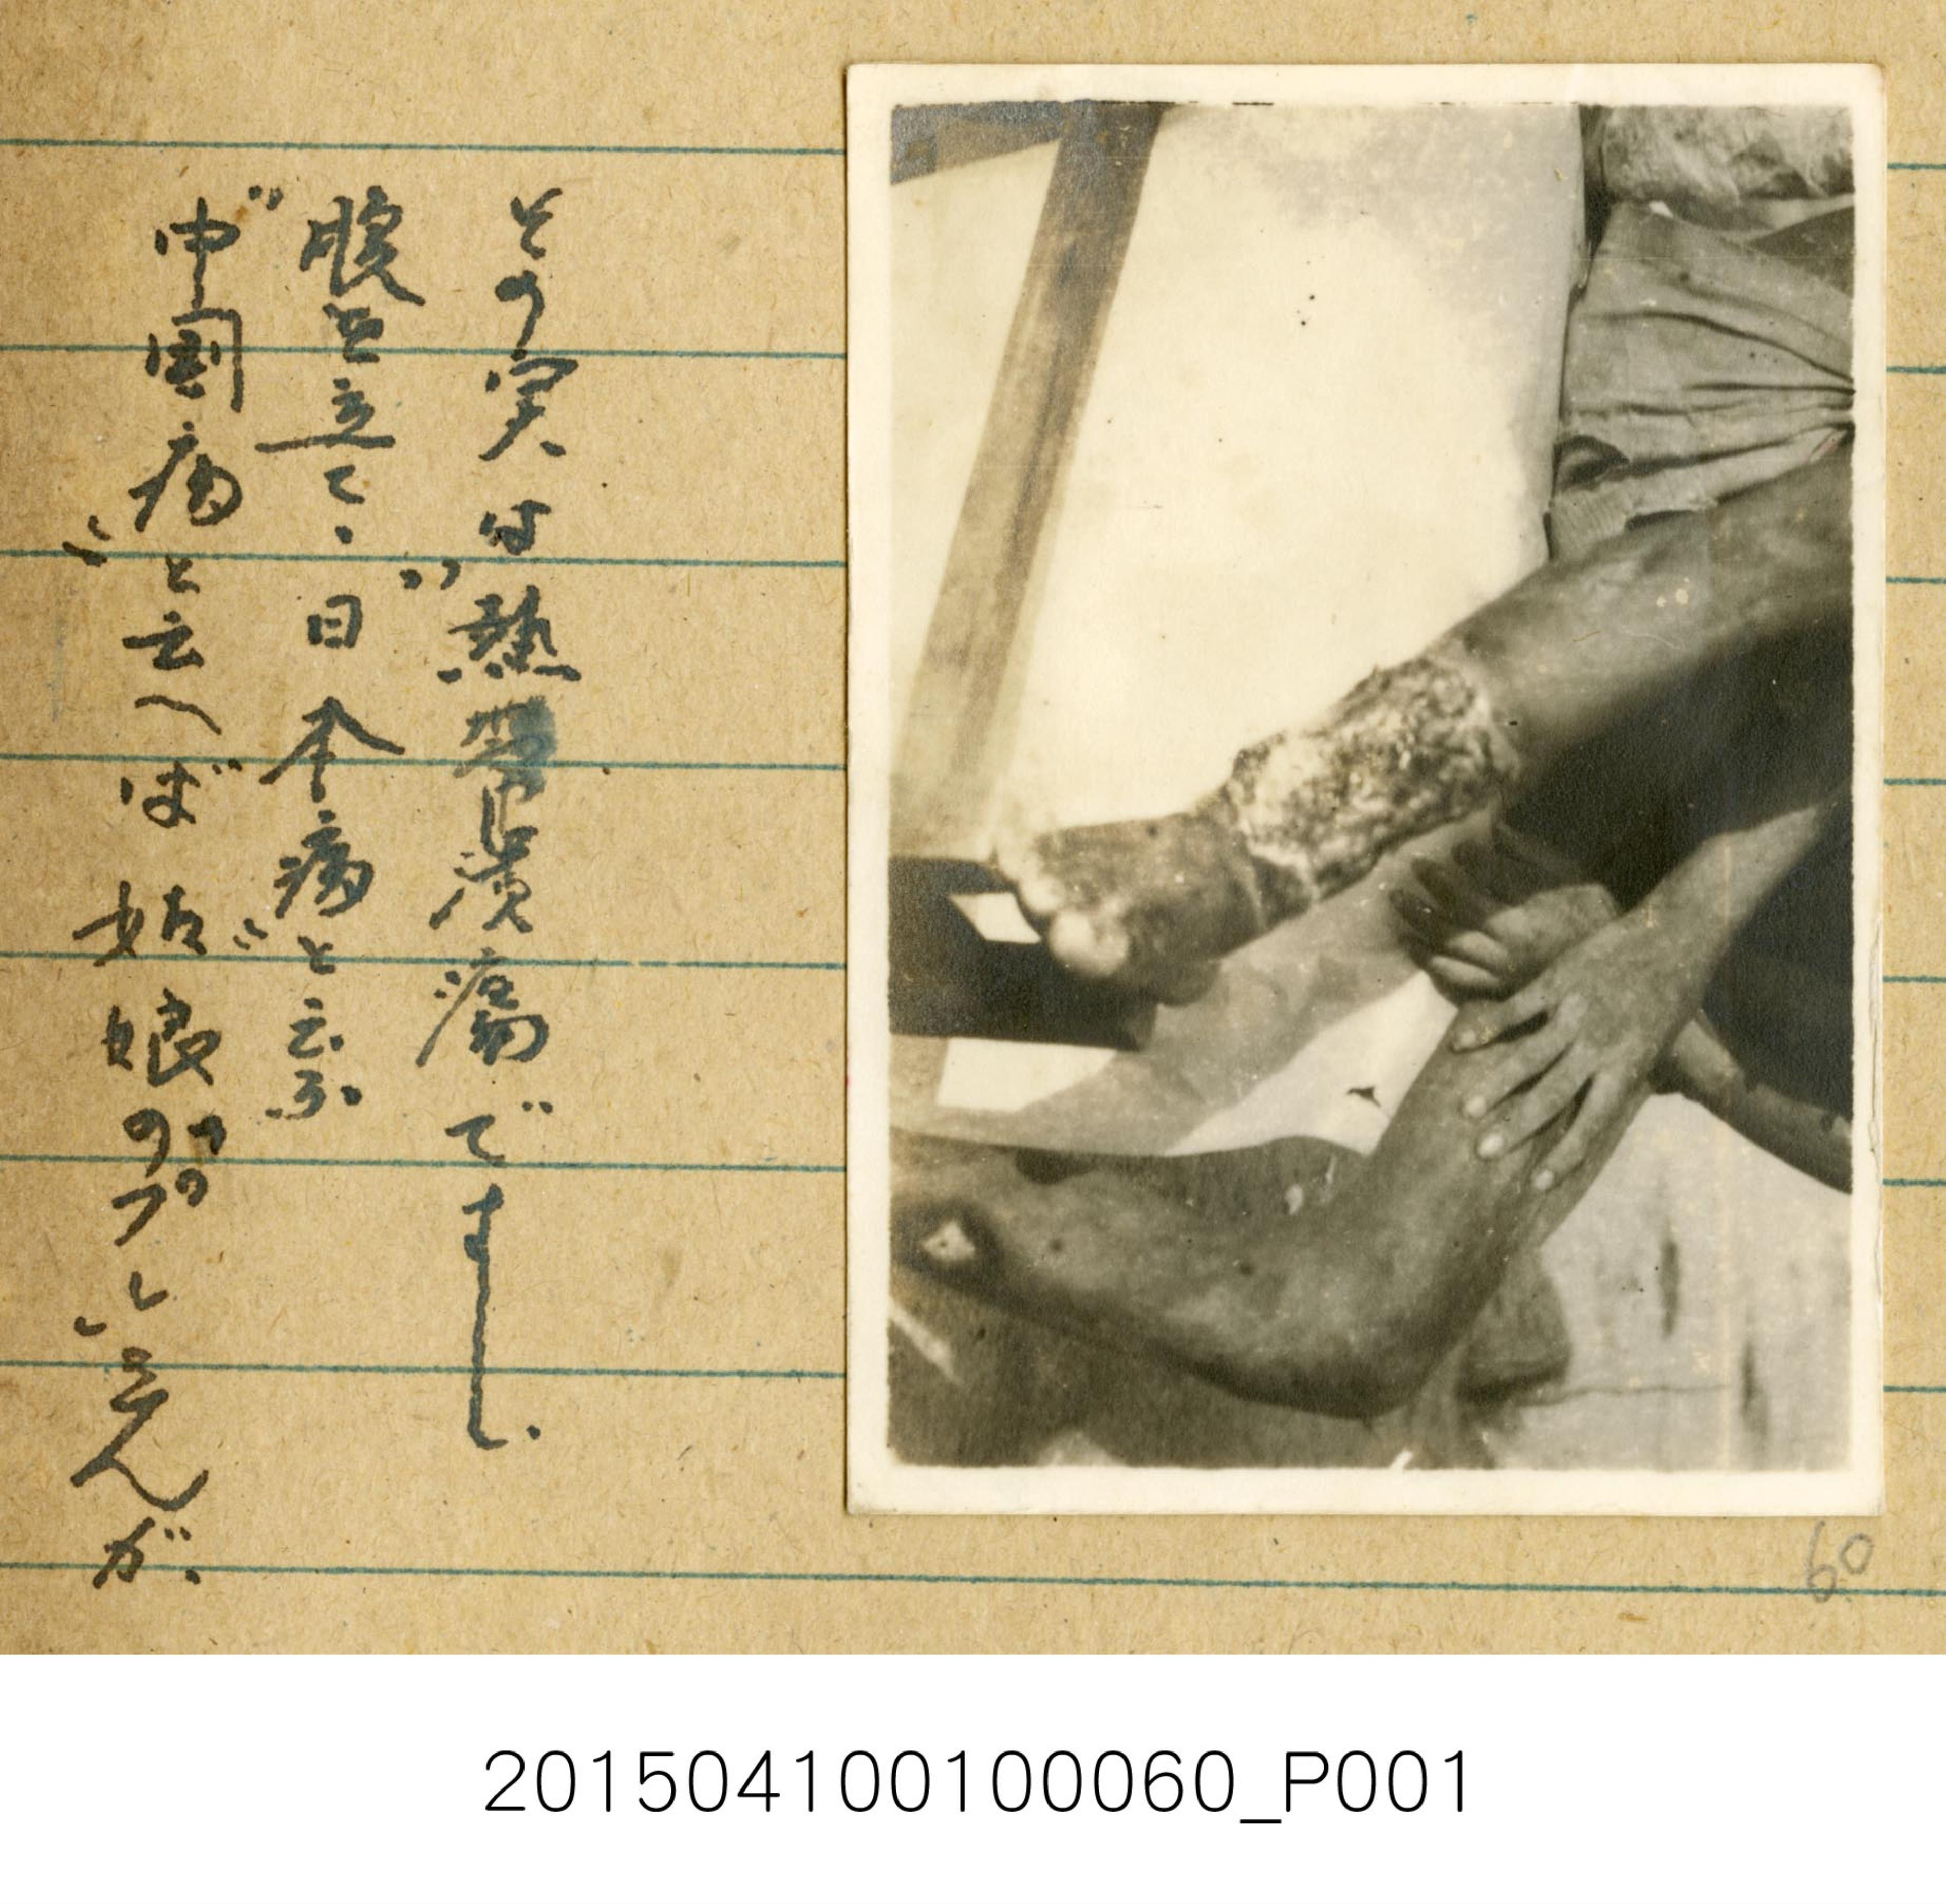 海南島期間熱帶潰瘍紀錄相片 (共1張)